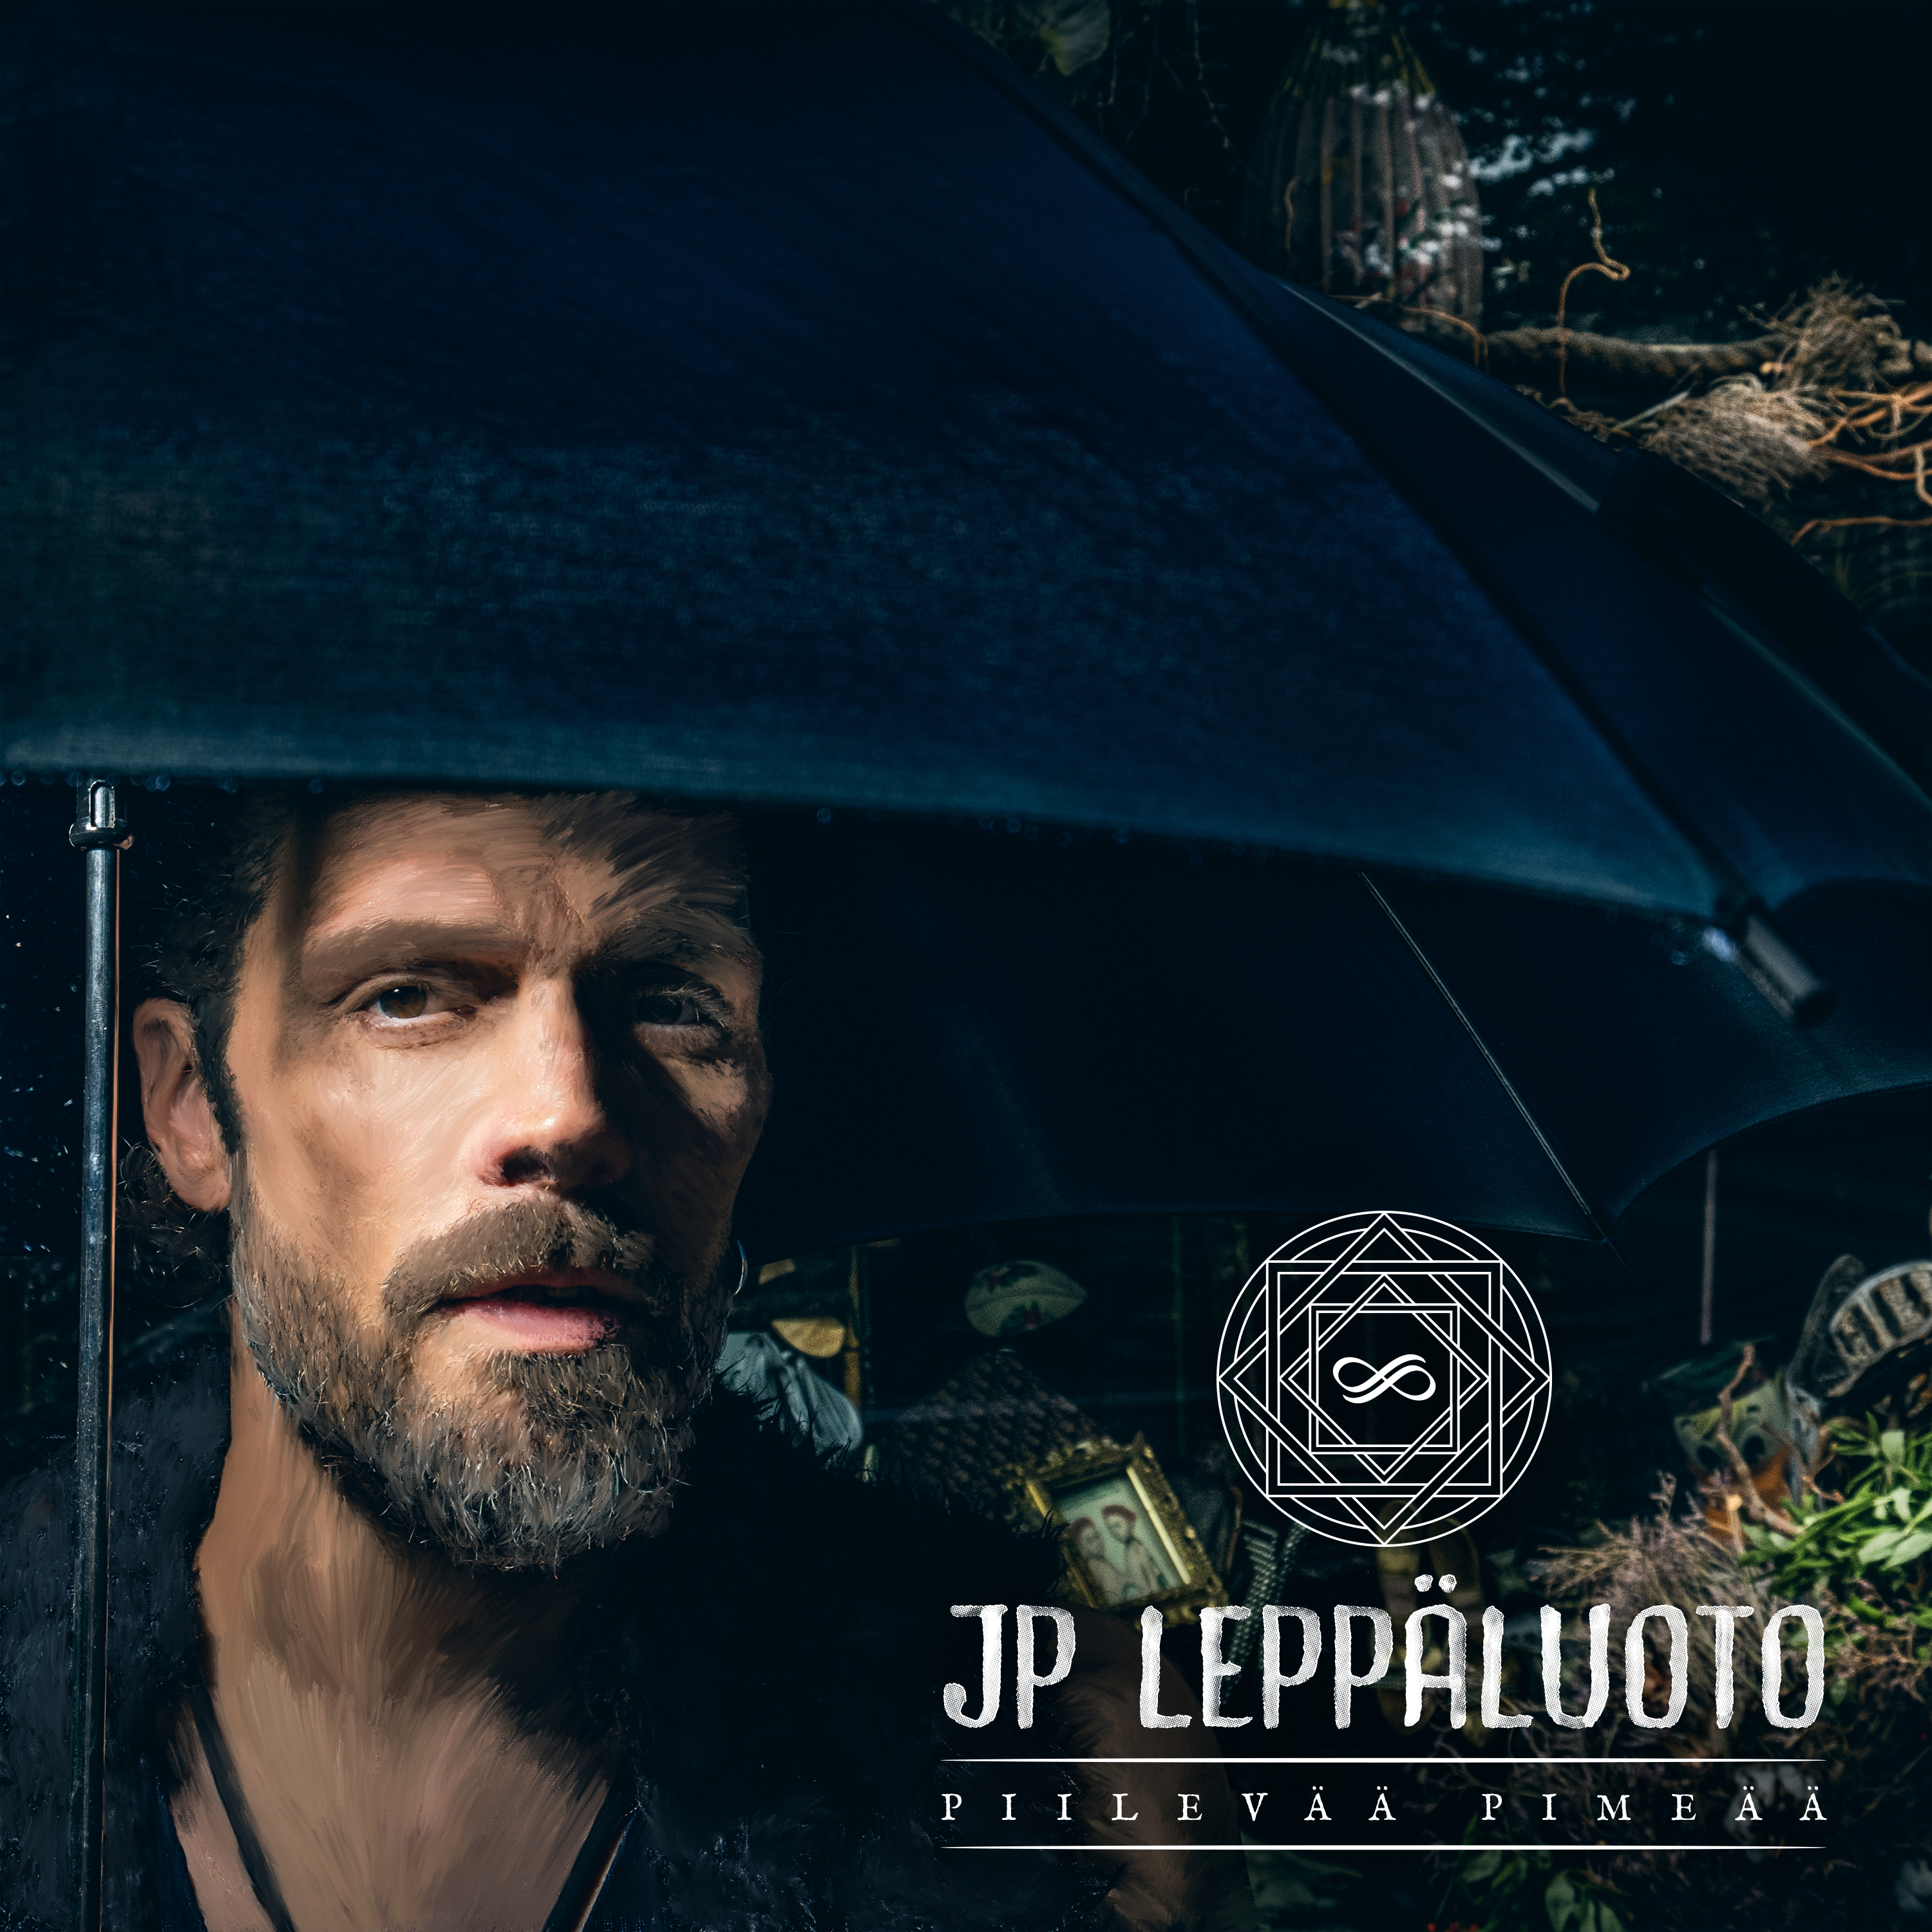 JP Lepp luoto - Piilev   pime  